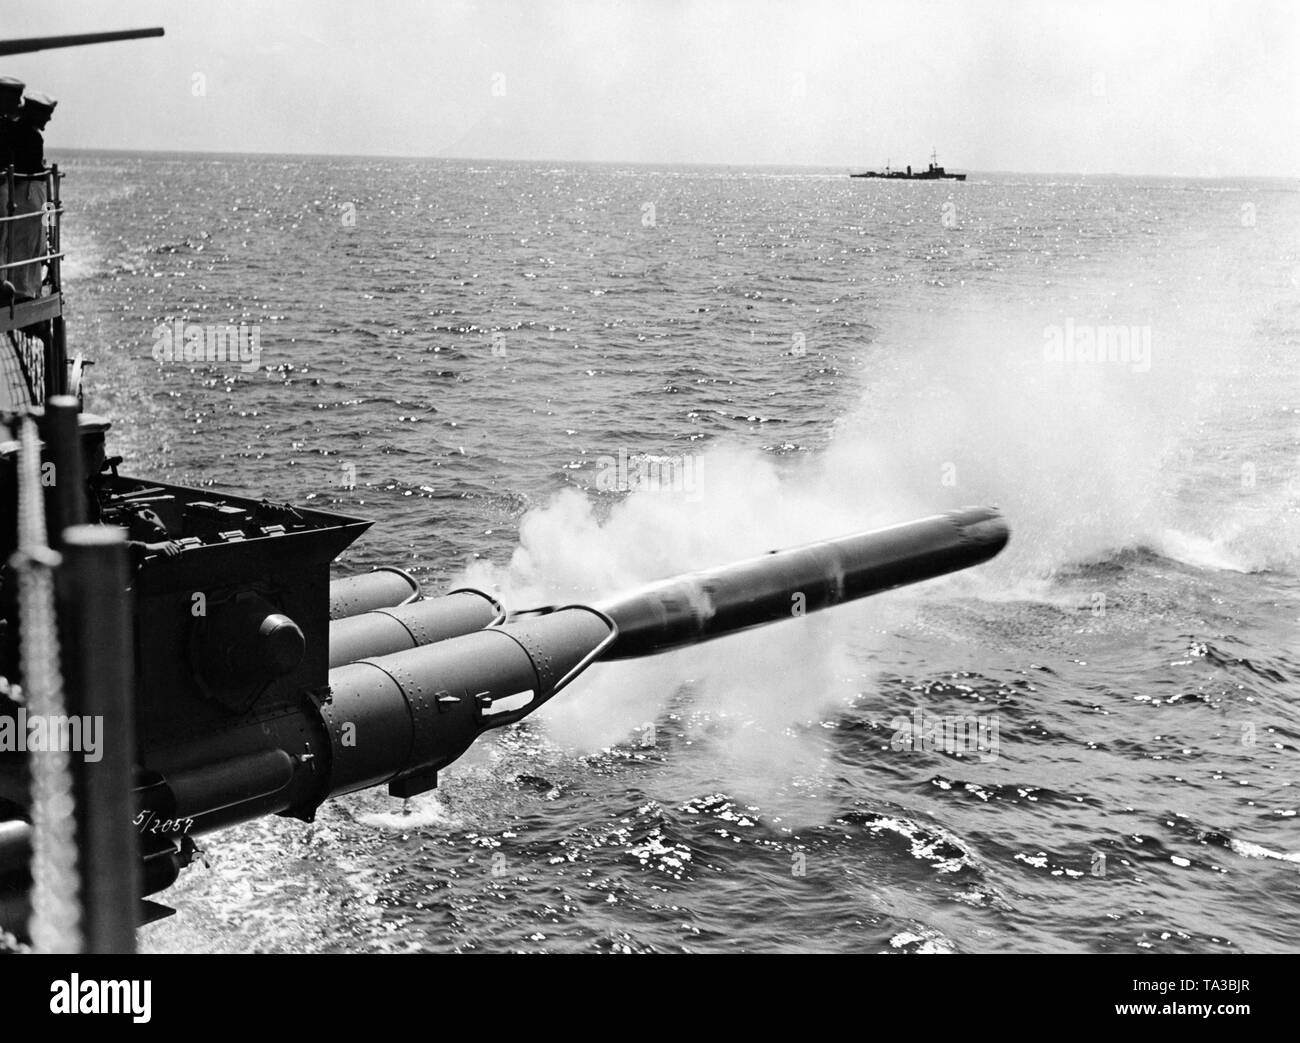 Un buque de guerra de la Kriegsmarine desencadena un torpedo, en el fondo uno puede reconocer otro barco. Es probablemente un filmstill. Foto de stock